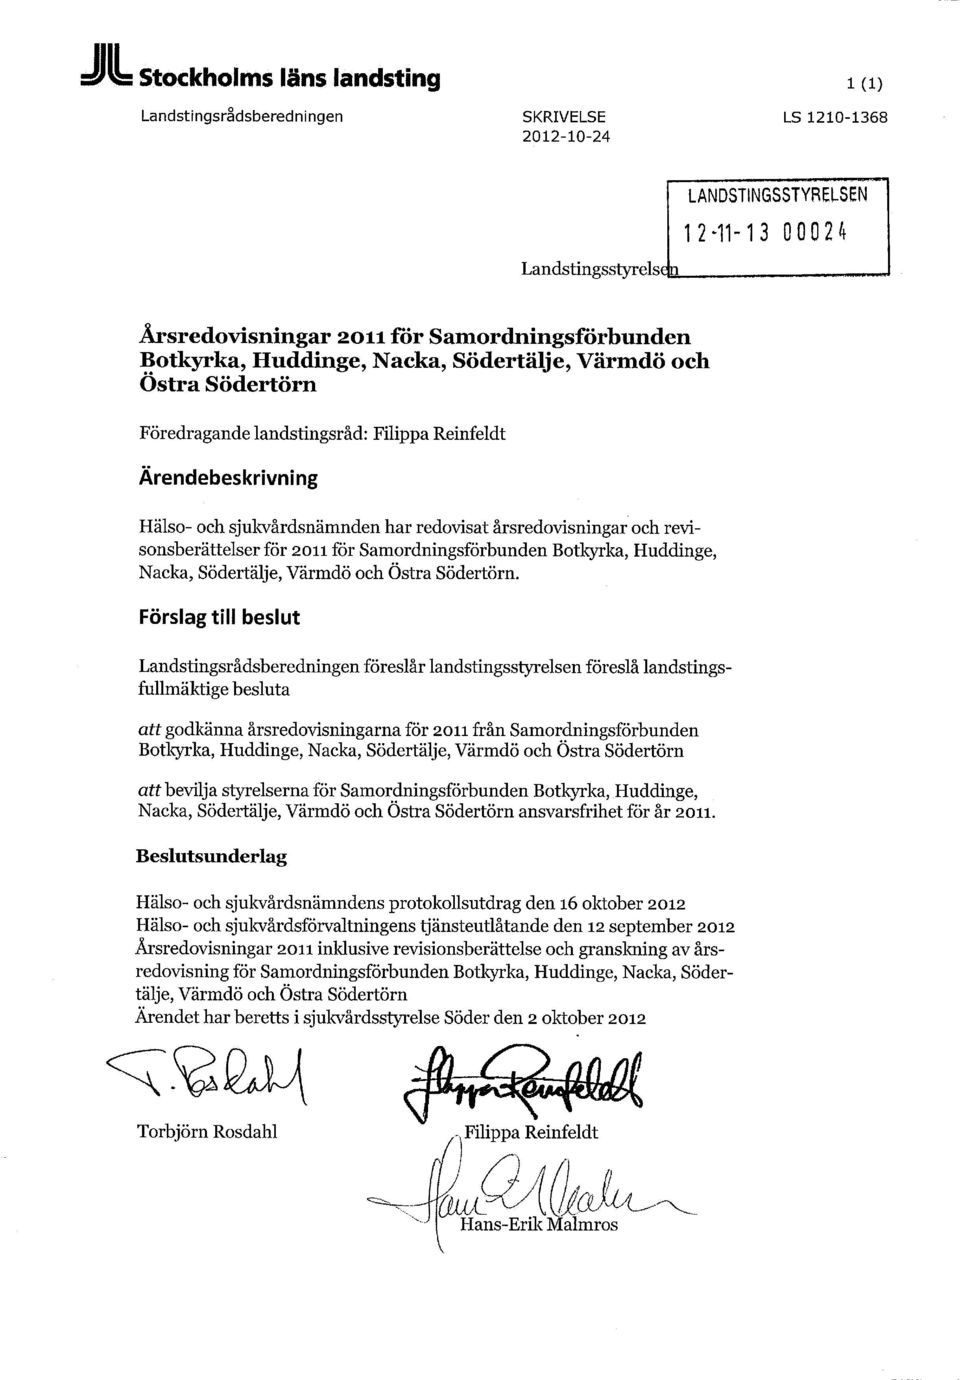 revisonsberättelser för 2011 för Samordningsförbunden Botkyrka, Huddinge, Nacka, Södertälje, Värmdö och Östra Södertörn.